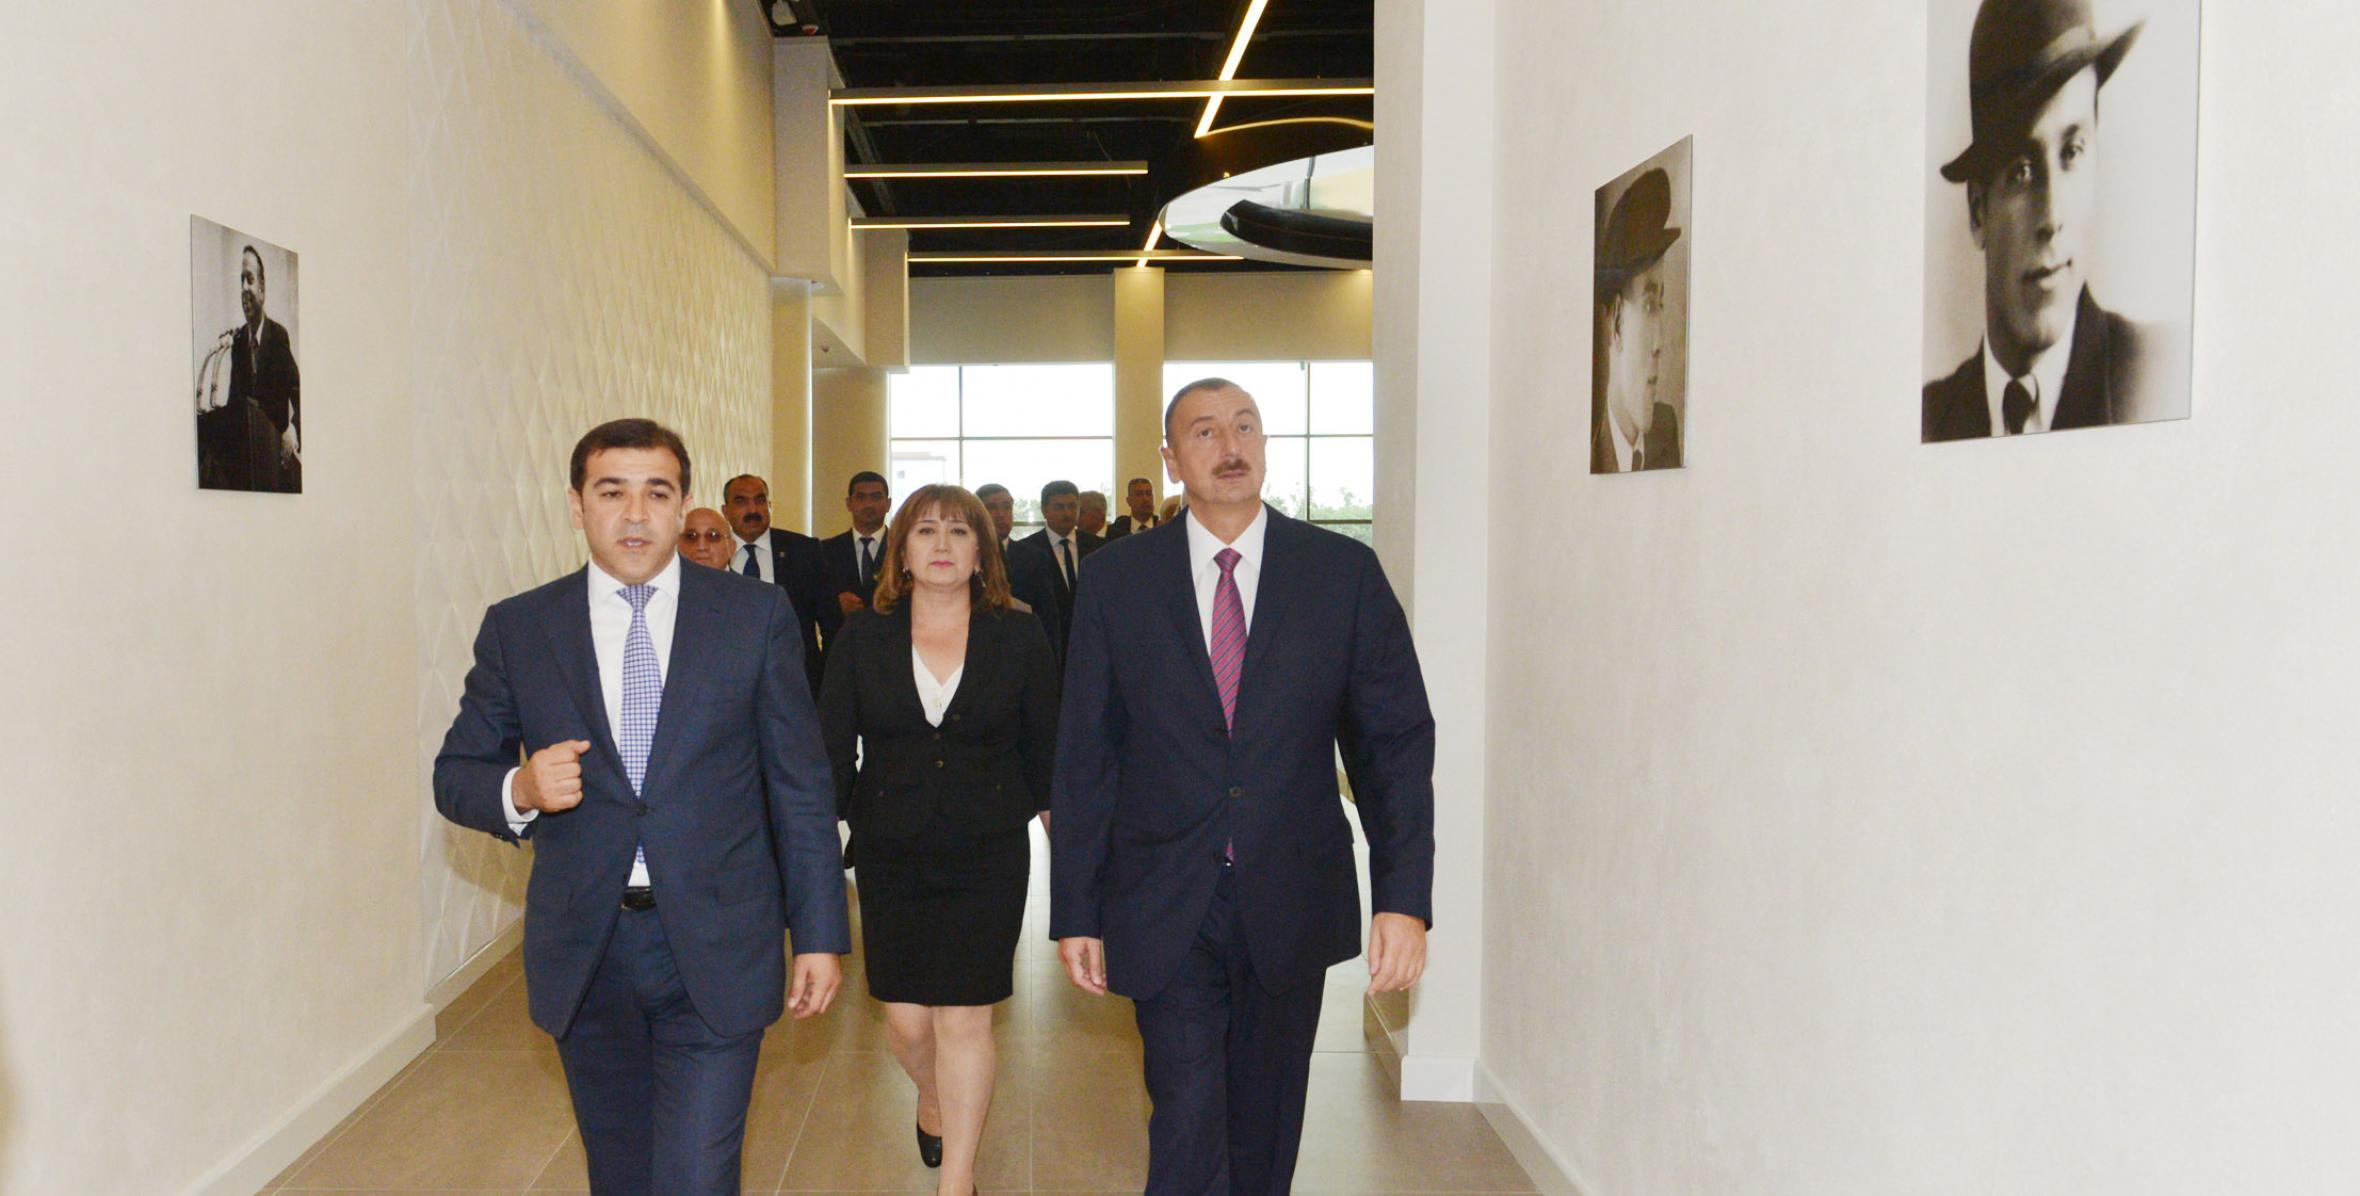 Ilham Aliyev attended the opening of the Heydar Aliyev Center in Shamkir